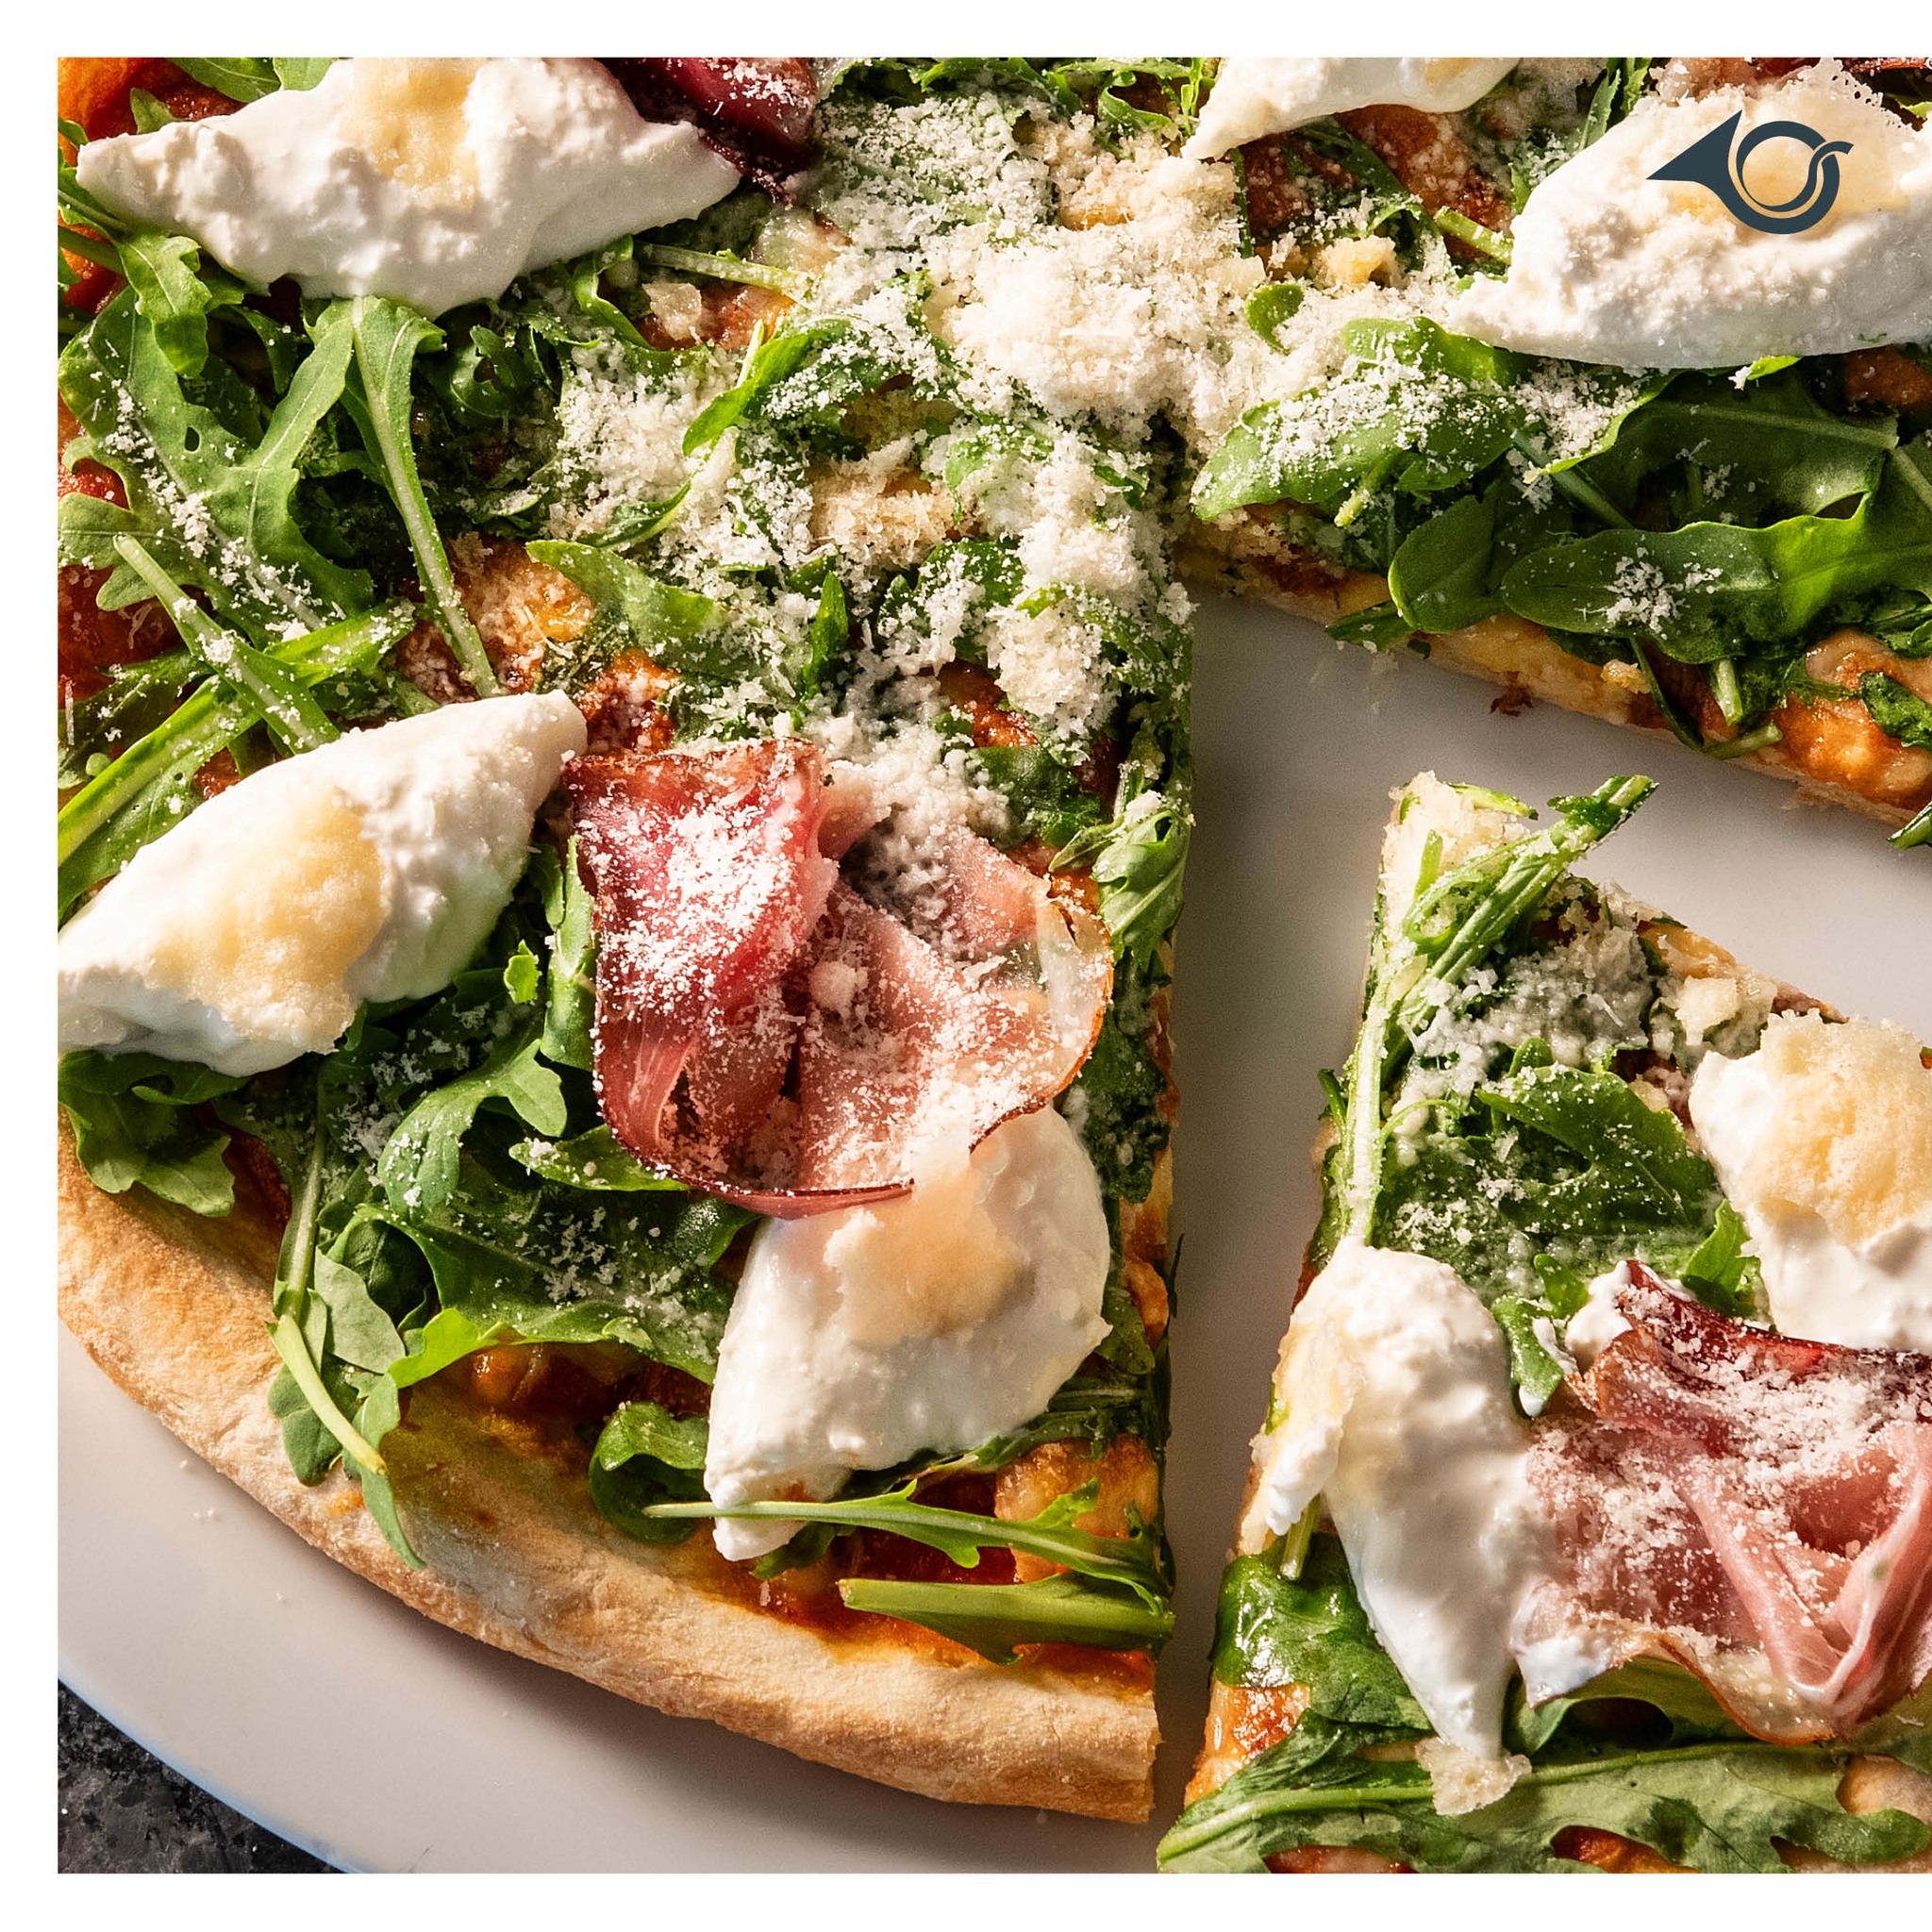 Che Gusto ✨ 🇮🇹
Nachdem wir direkt am Meer der Tiroler liegen, liegt es auch nahe, dass ihr bei uns mit echt italienischer Pizza verwöhnt werdet. Darüber hinaus gibt’s an der PostBAR ab 1. Mai ein neues Highlight: Sushi vom Meister aus Japan!

#postbar #postbarbistro #postamsee #postamseeachensee #seeyouthere #bergundsee #tirol #austria #achensee #bestoftirol #ilovetirol #visitaustria #visittyrol …